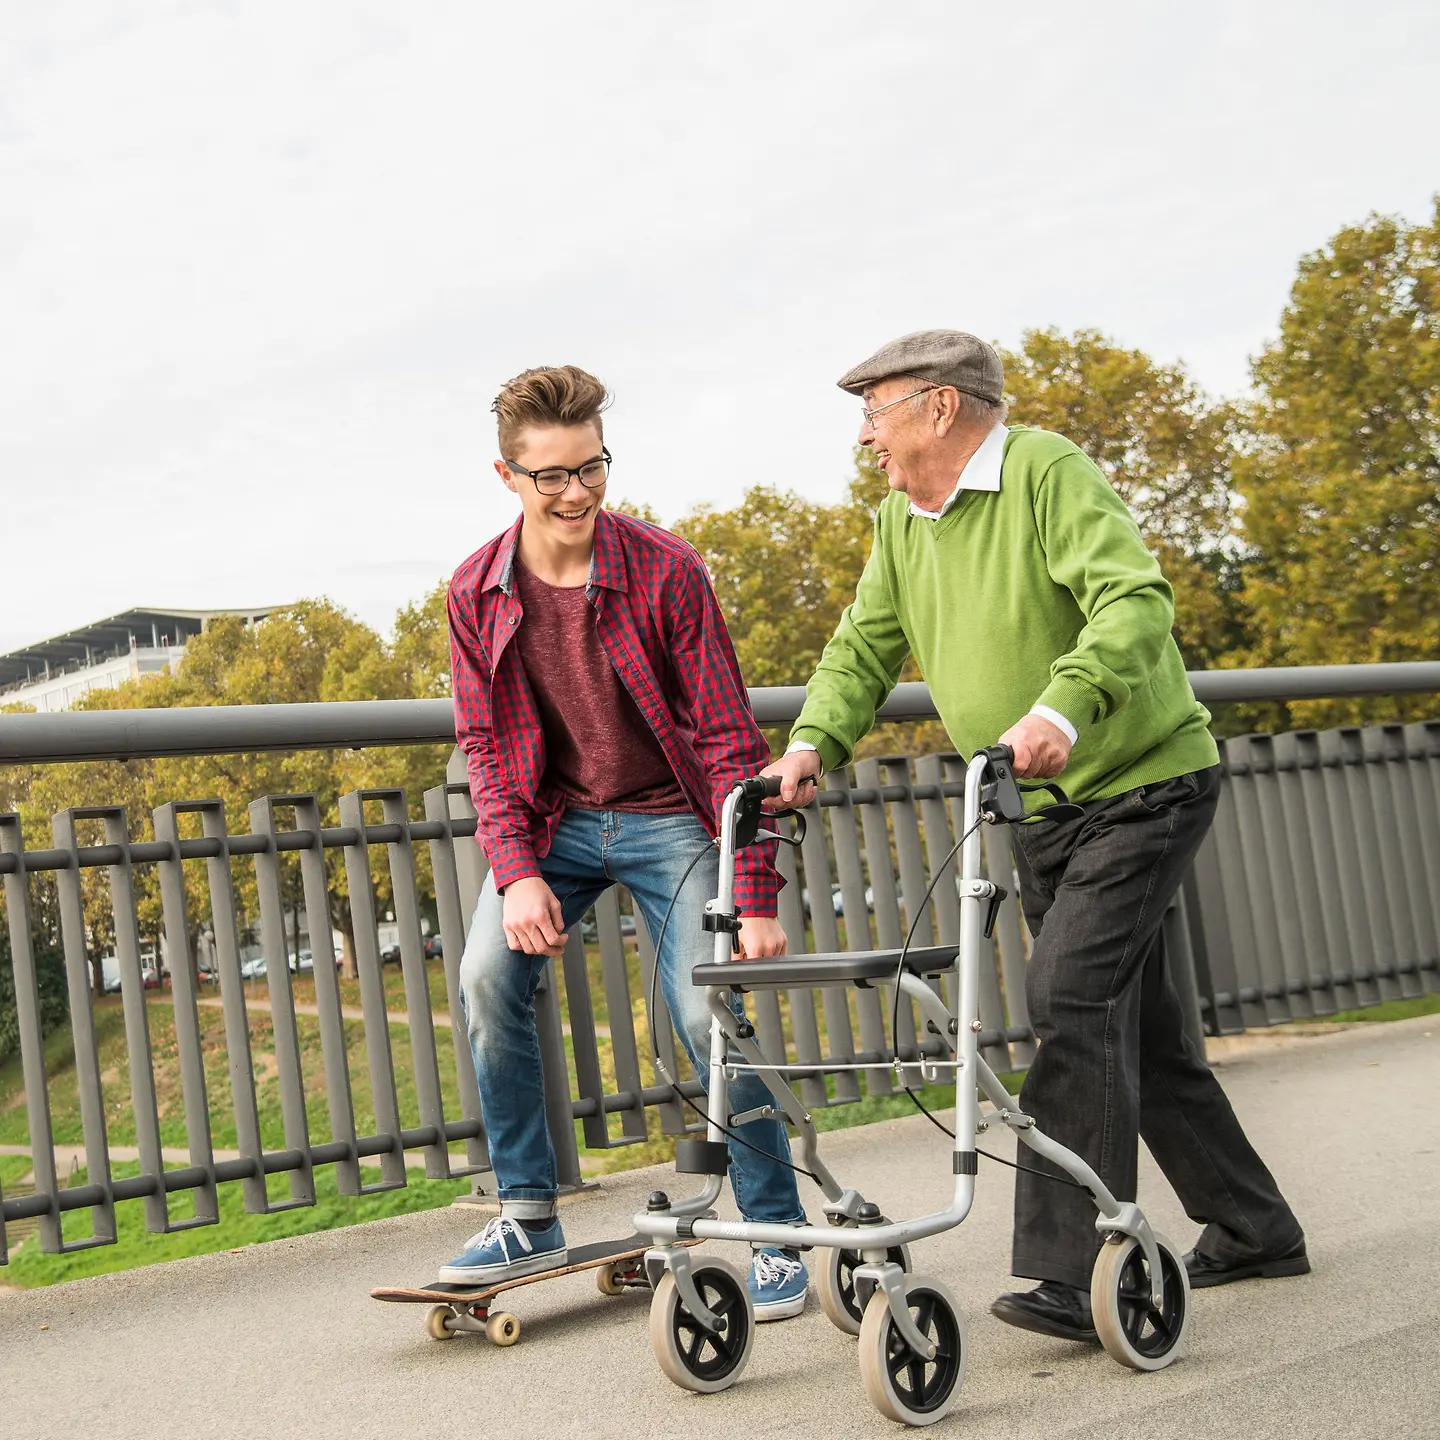 Ein älterer Mann mit Rollator und ein Junge mit Skateboard